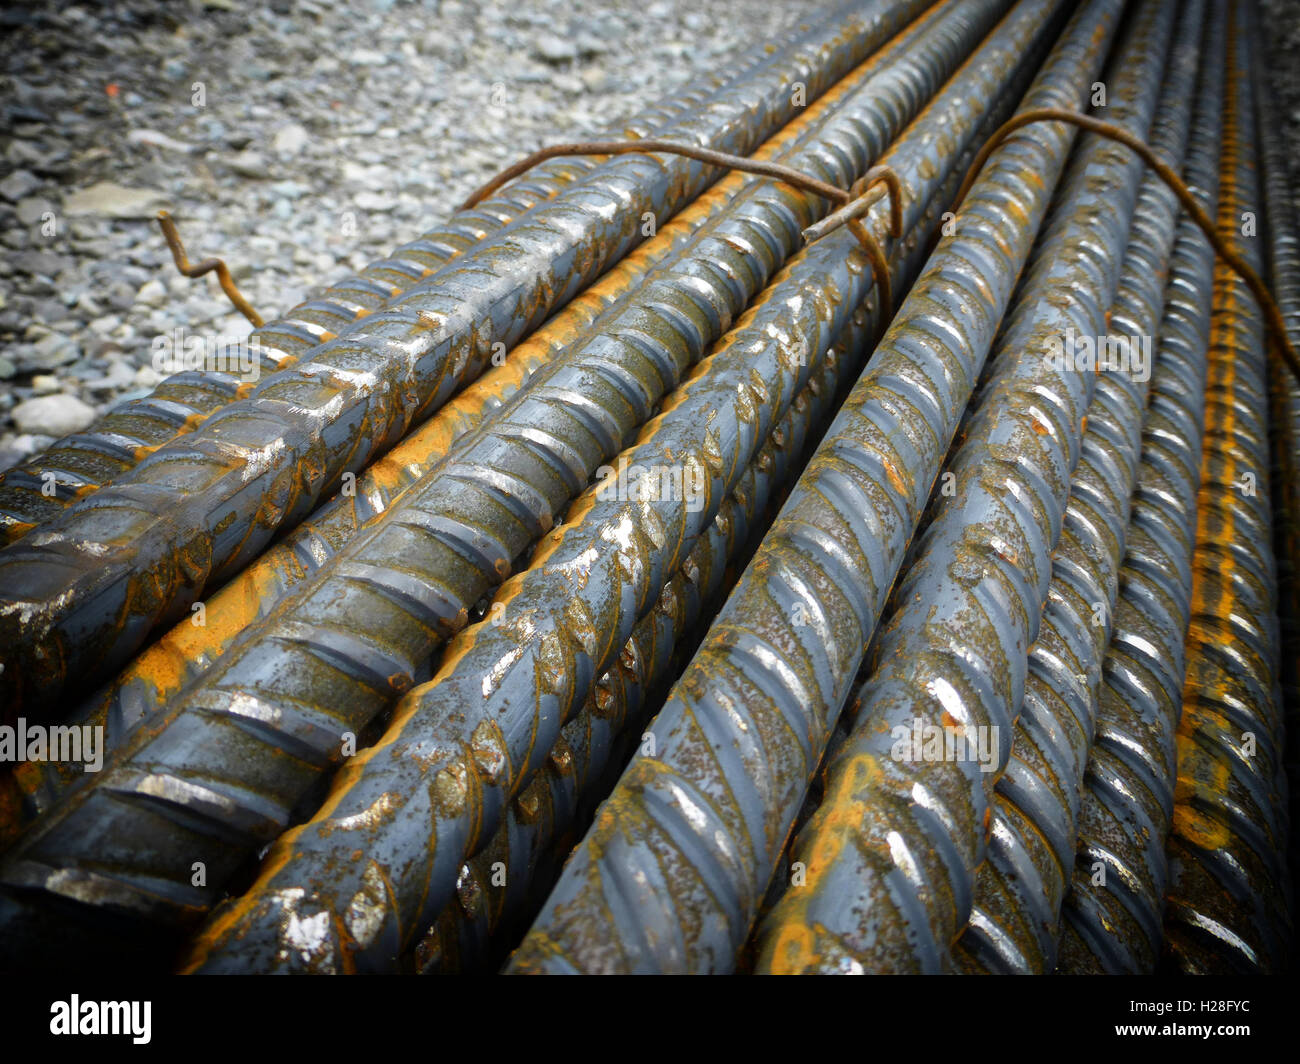 Eisenstangen für armierten Beton Stockfotografie - Alamy